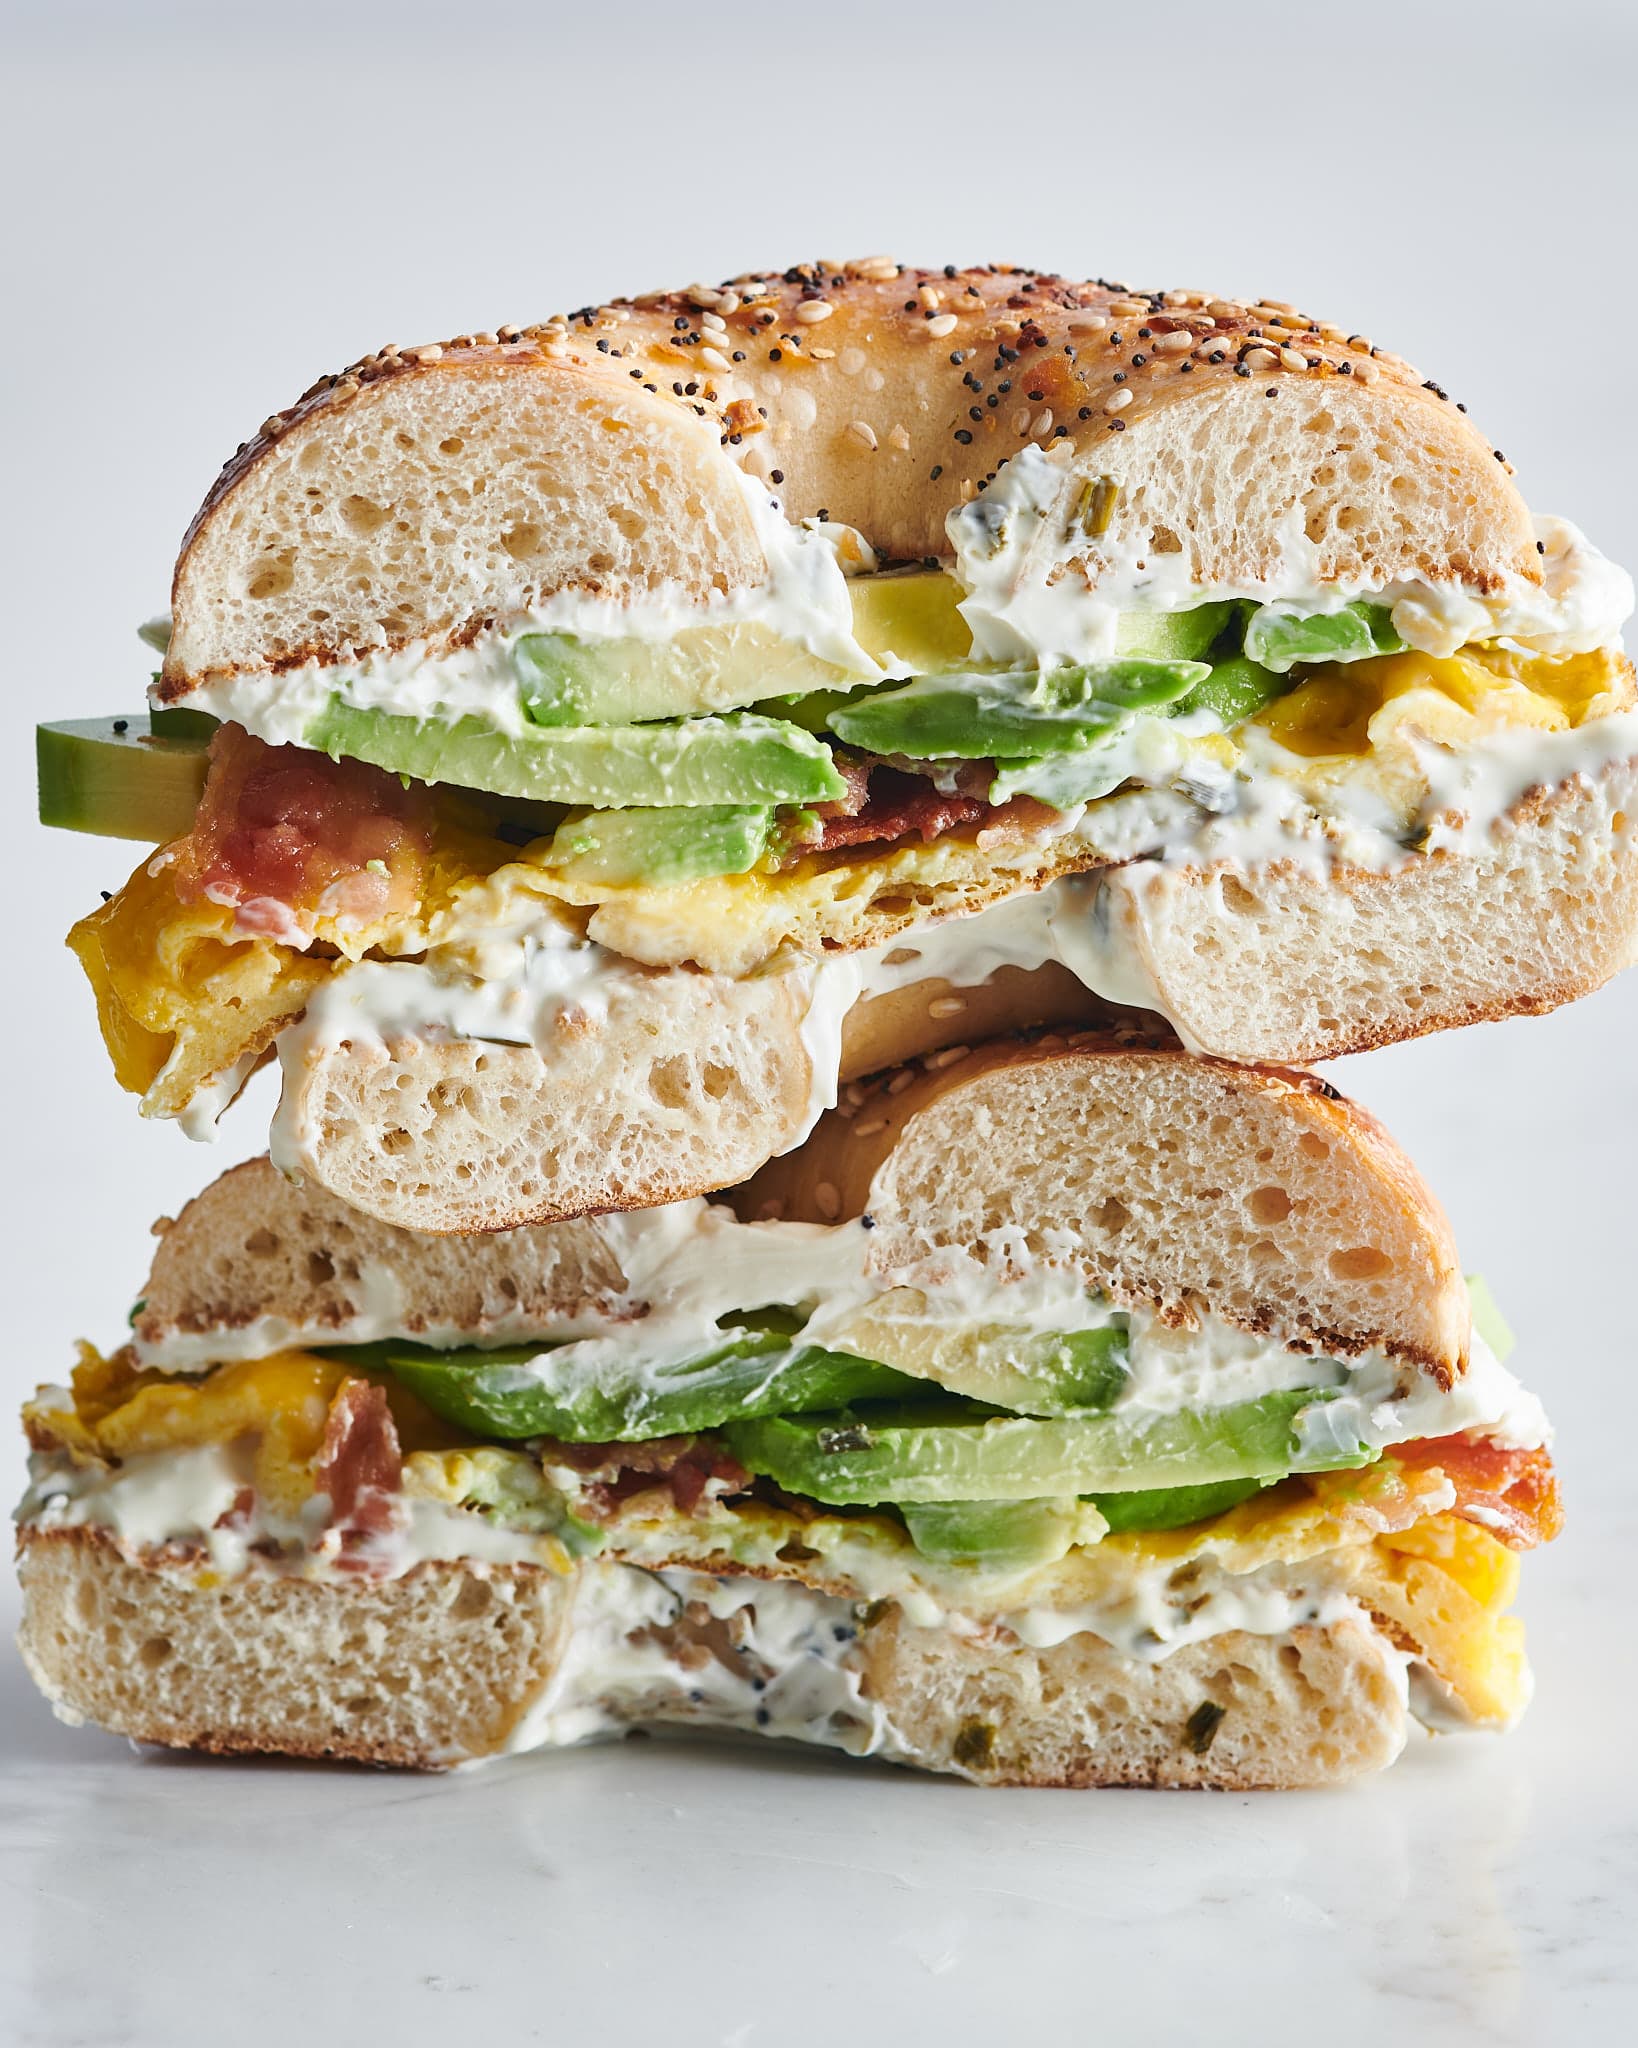 https://cdn.apartmenttherapy.info/image/upload/v1620425565/k/Photo/Series/2021-05-snapshot-five-ingredient-breakfast-sandwiches/Snapshot_5-Ingredient-Breakfast-Sandwiches_Bagel/2021-05-03_ATK-0170.jpg